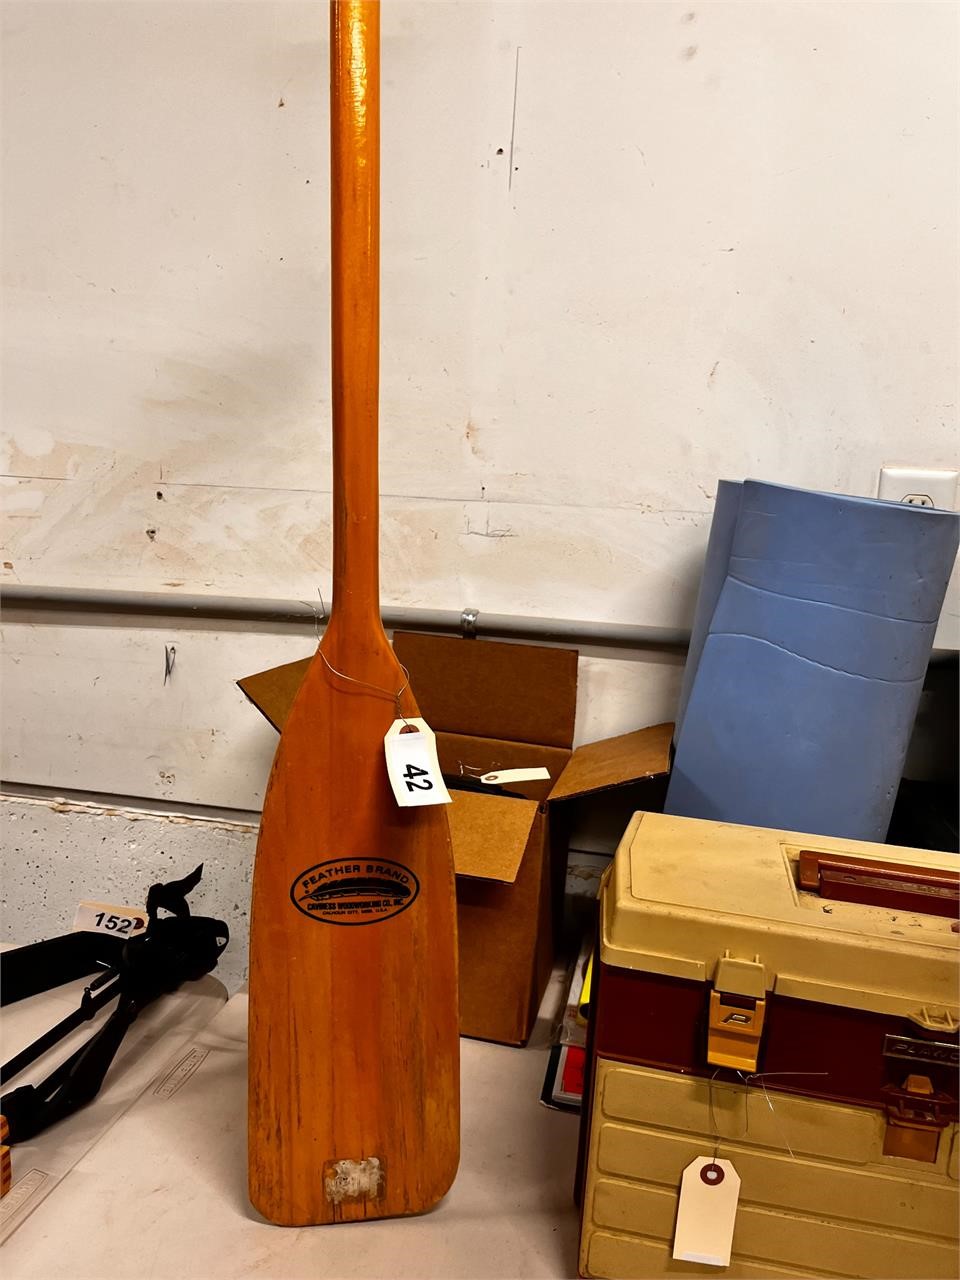 Feather brand wooden oar